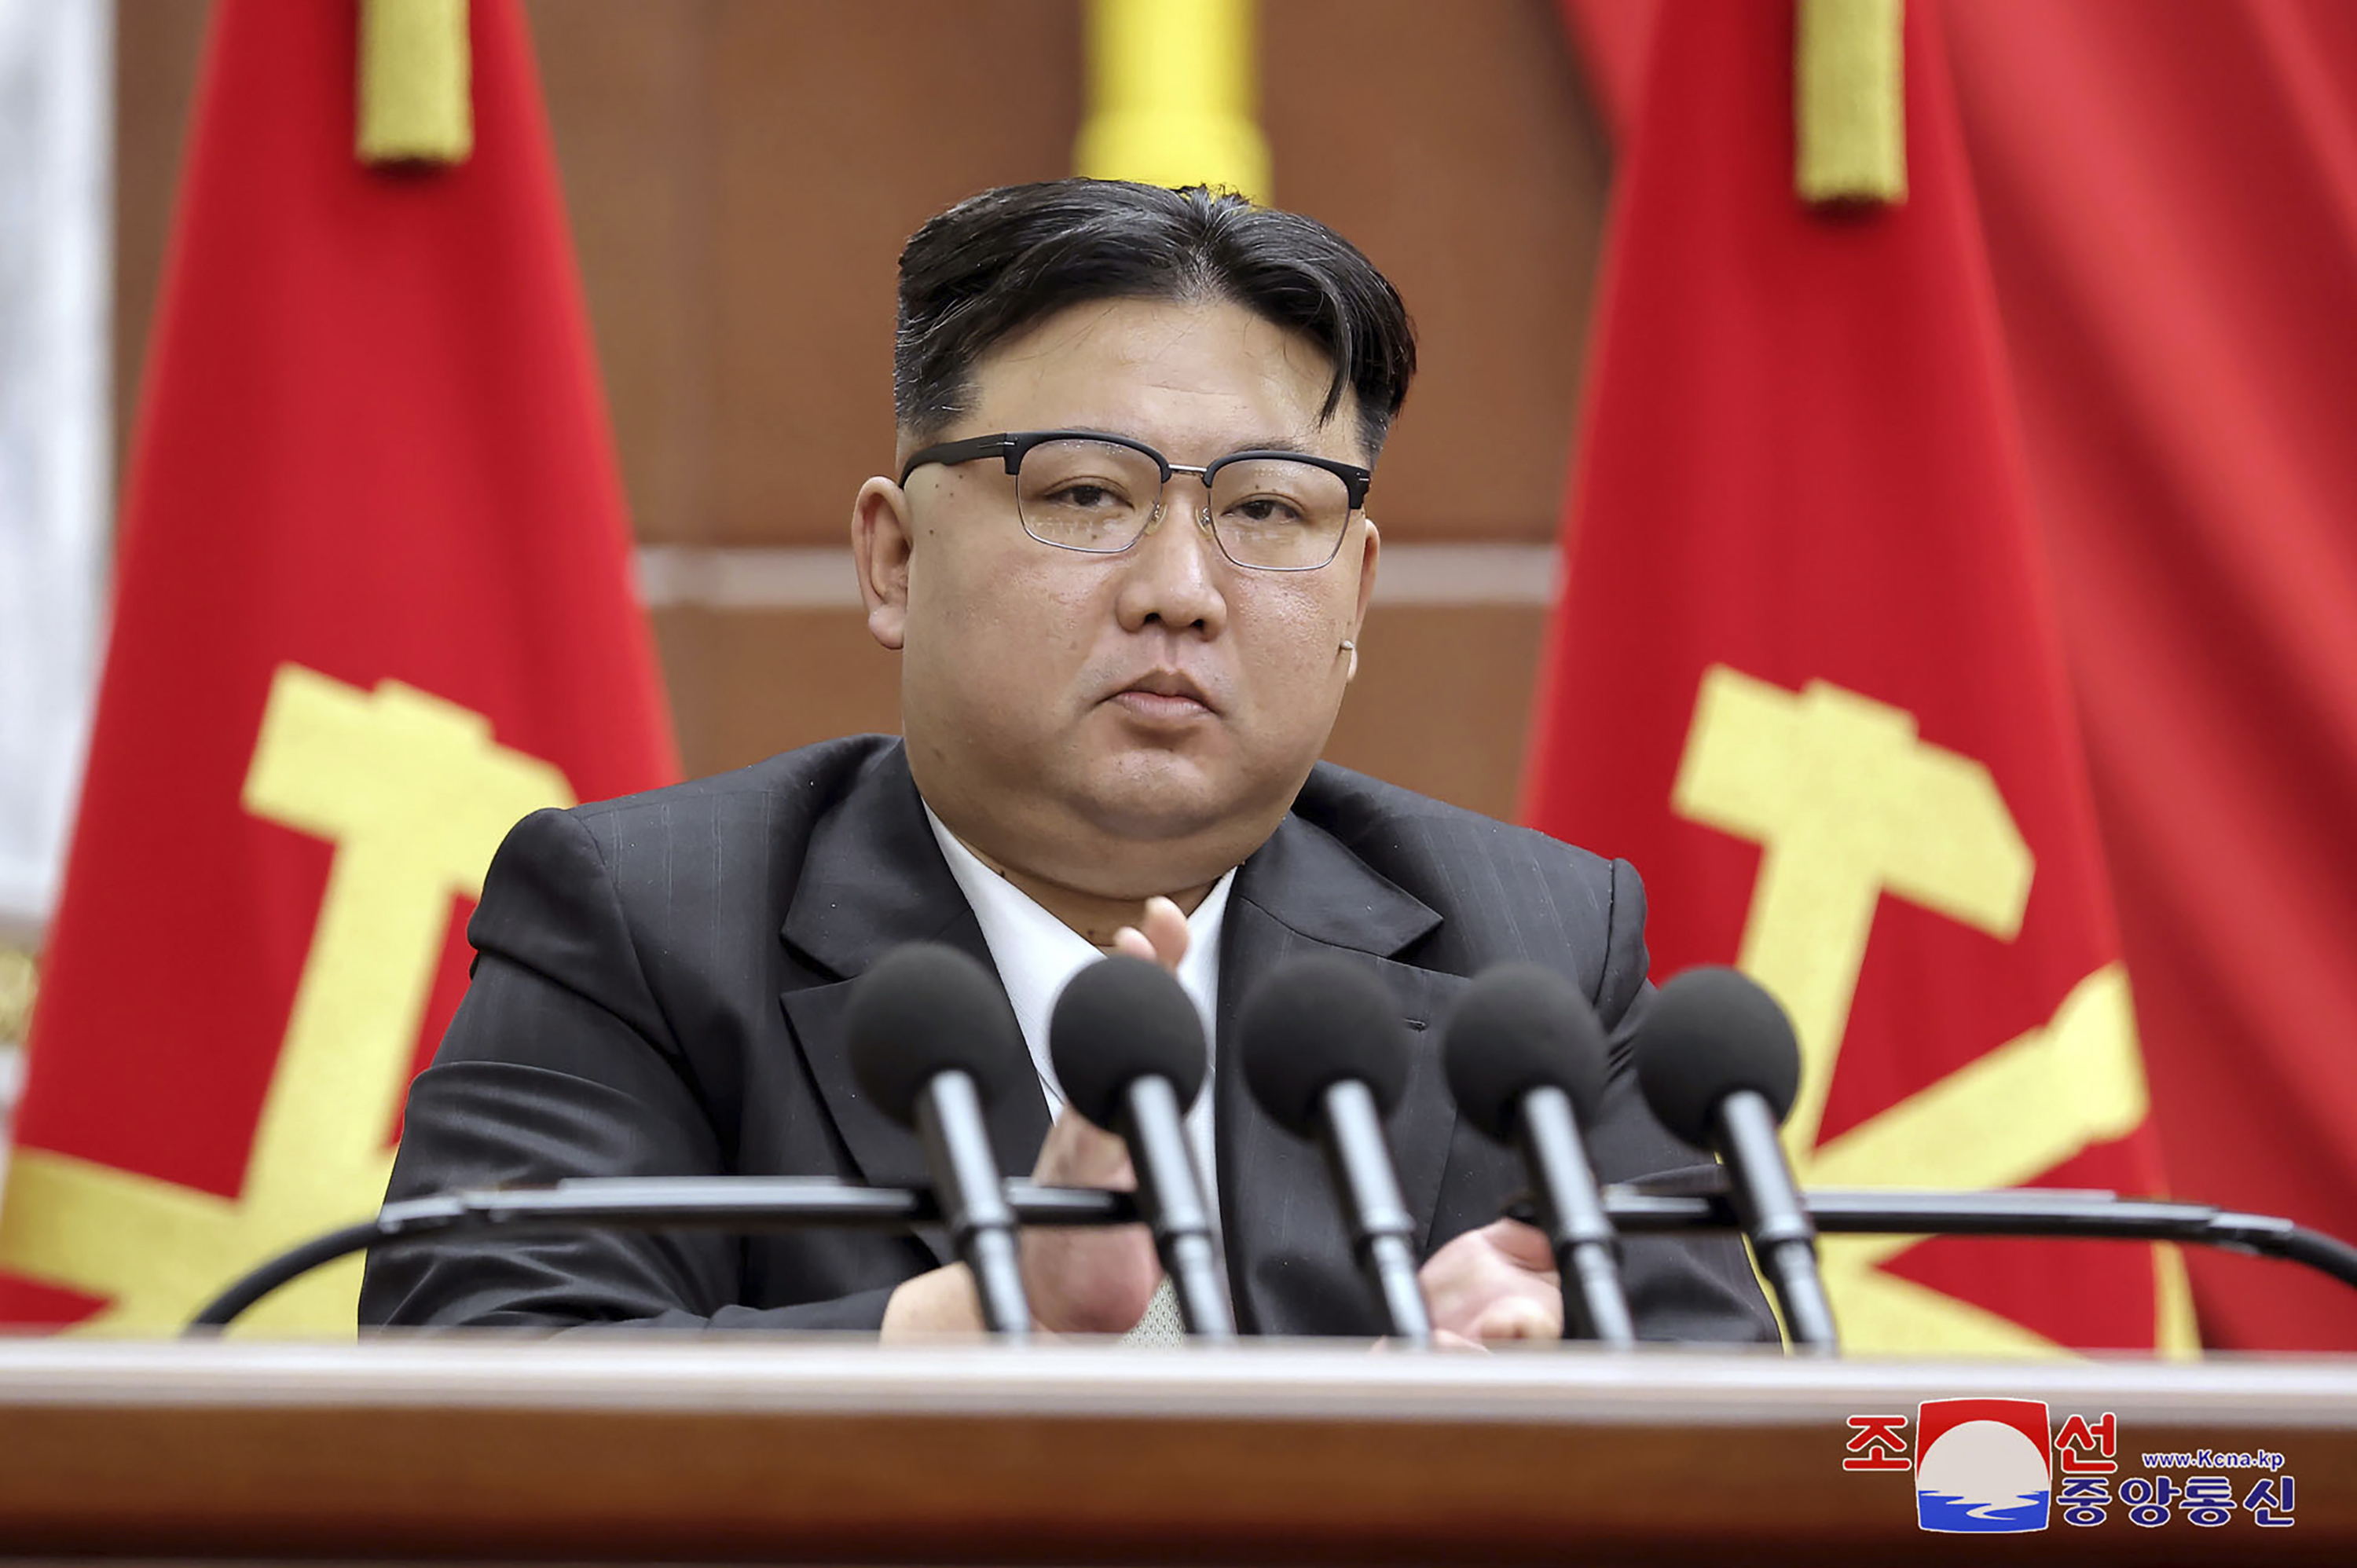 Kim Jong Un pronuncia un discurso durante la reunin plenaria de fin de ao del Partido de los Trabajadores.